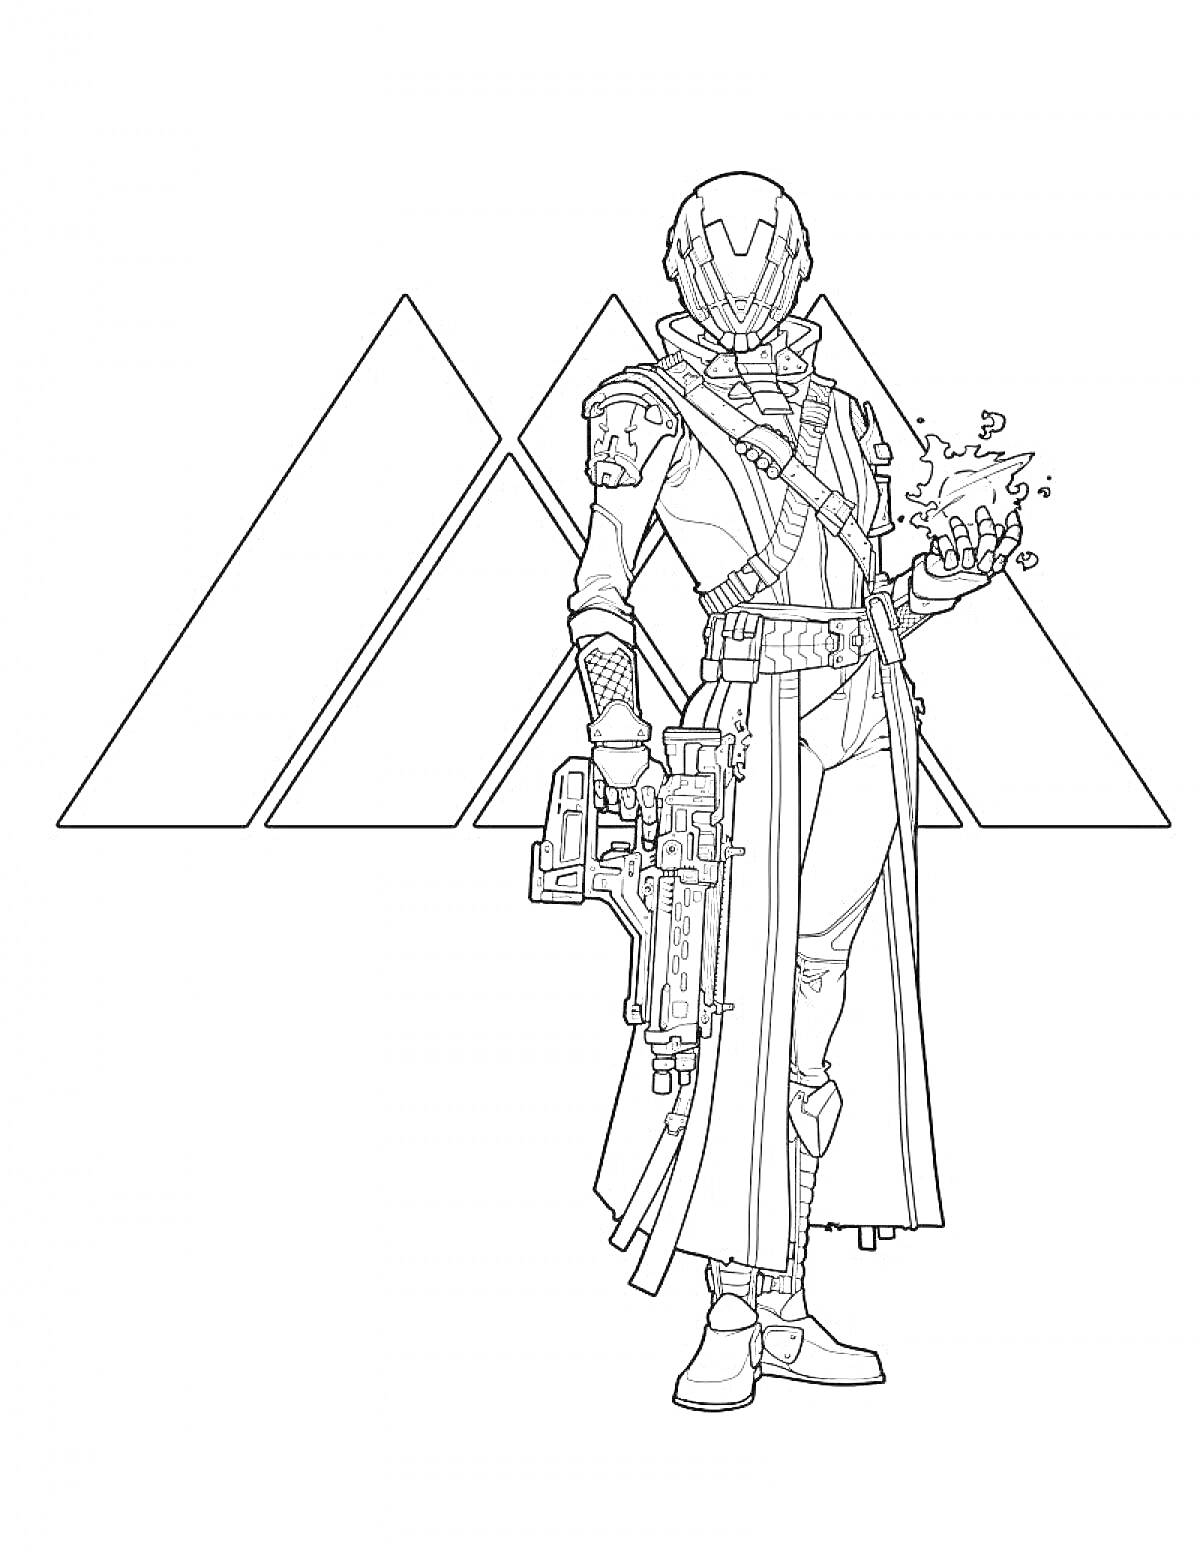 Человек в футуристической броне с оружием и магическим шаром на фоне трех треугольников